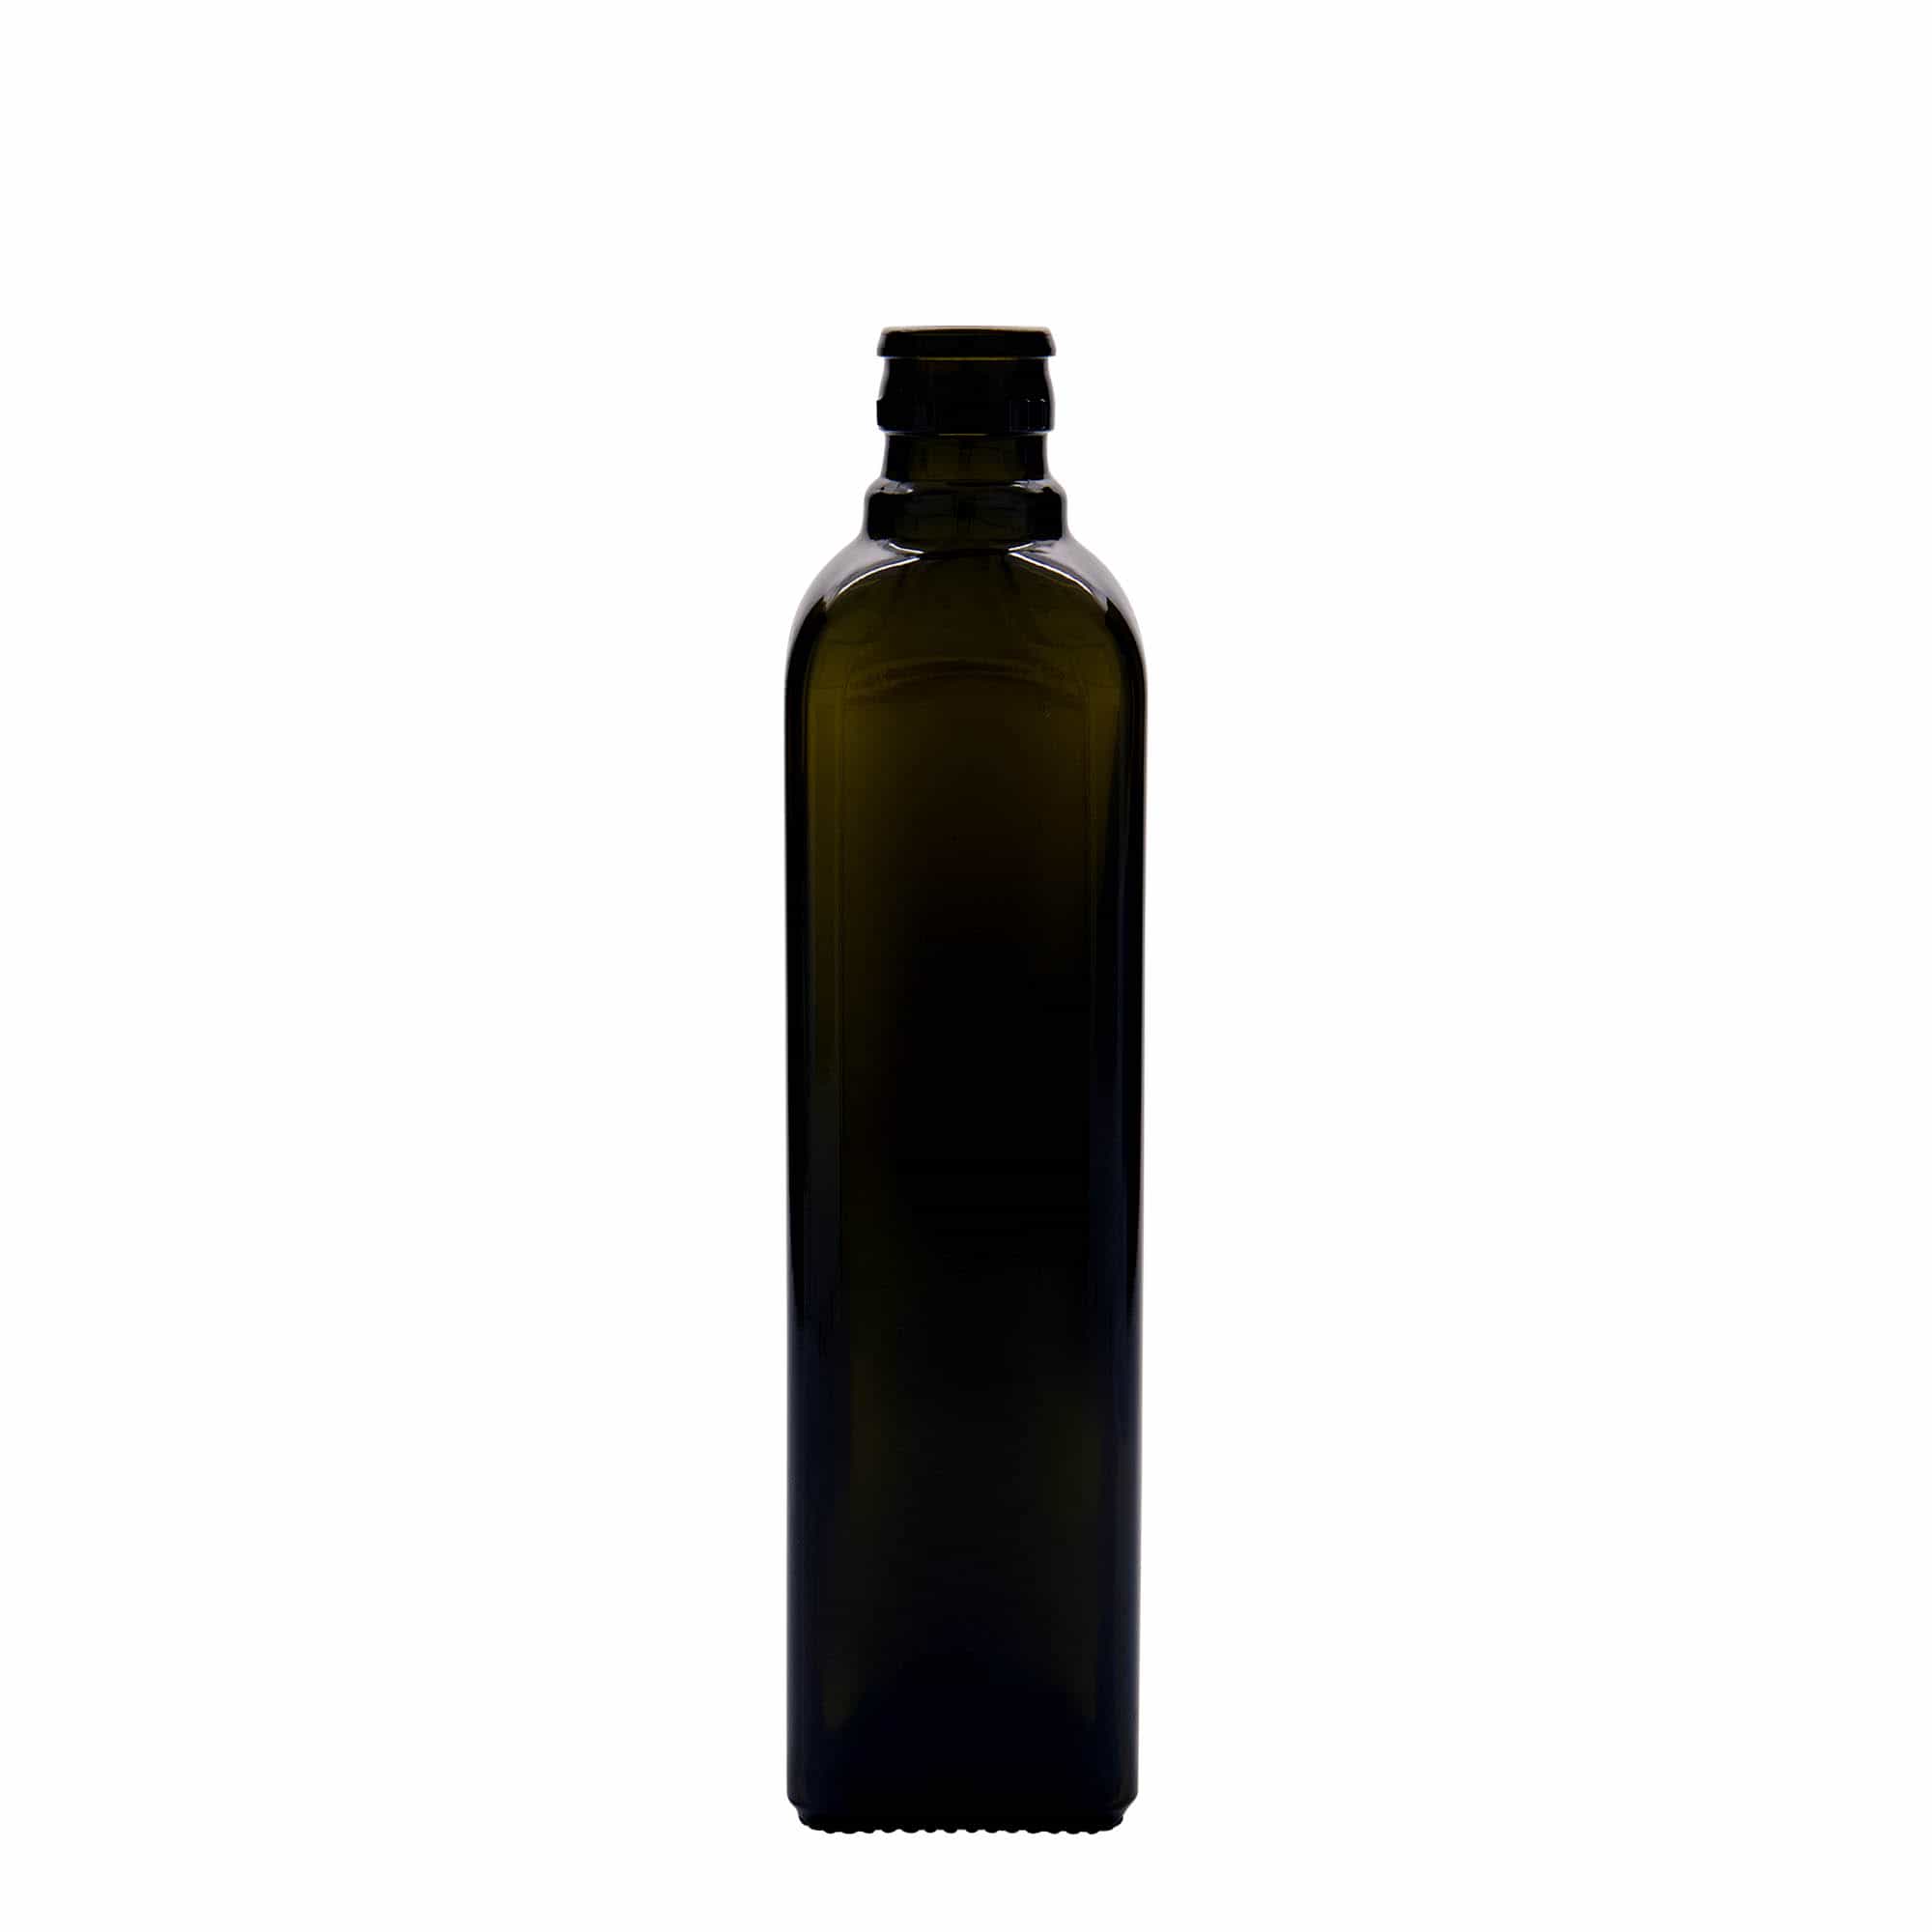 500 ml eddike-/olieflaske 'Quadra', glas, kvadratisk, antikgrøn, åbning: DOP